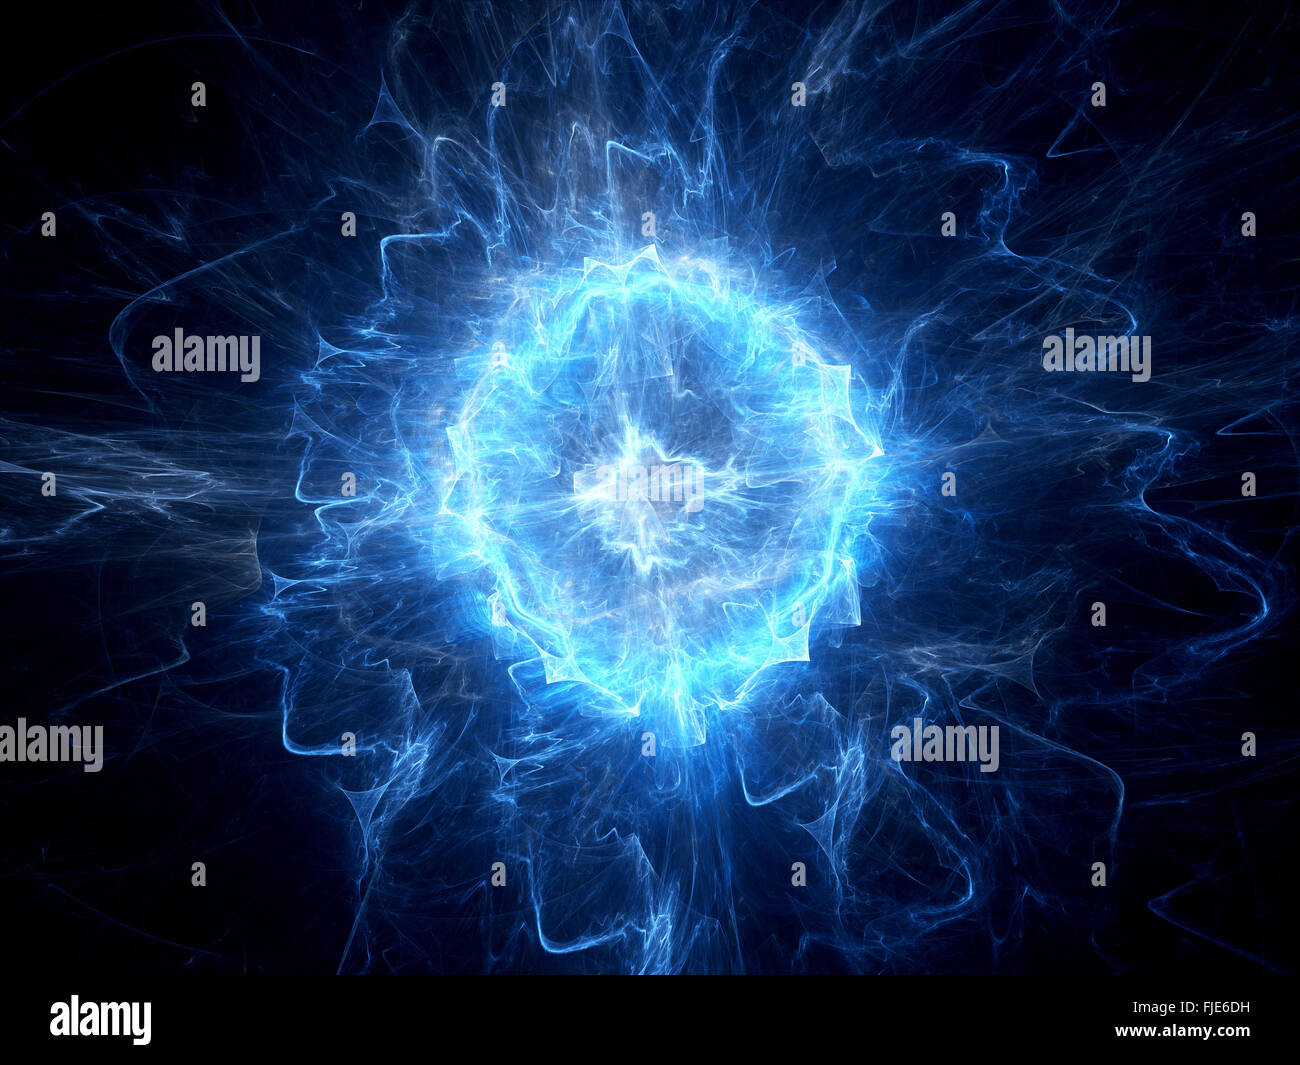 La foudre en boule lumineux bleu, générée par ordinateur abstract background Banque D'Images